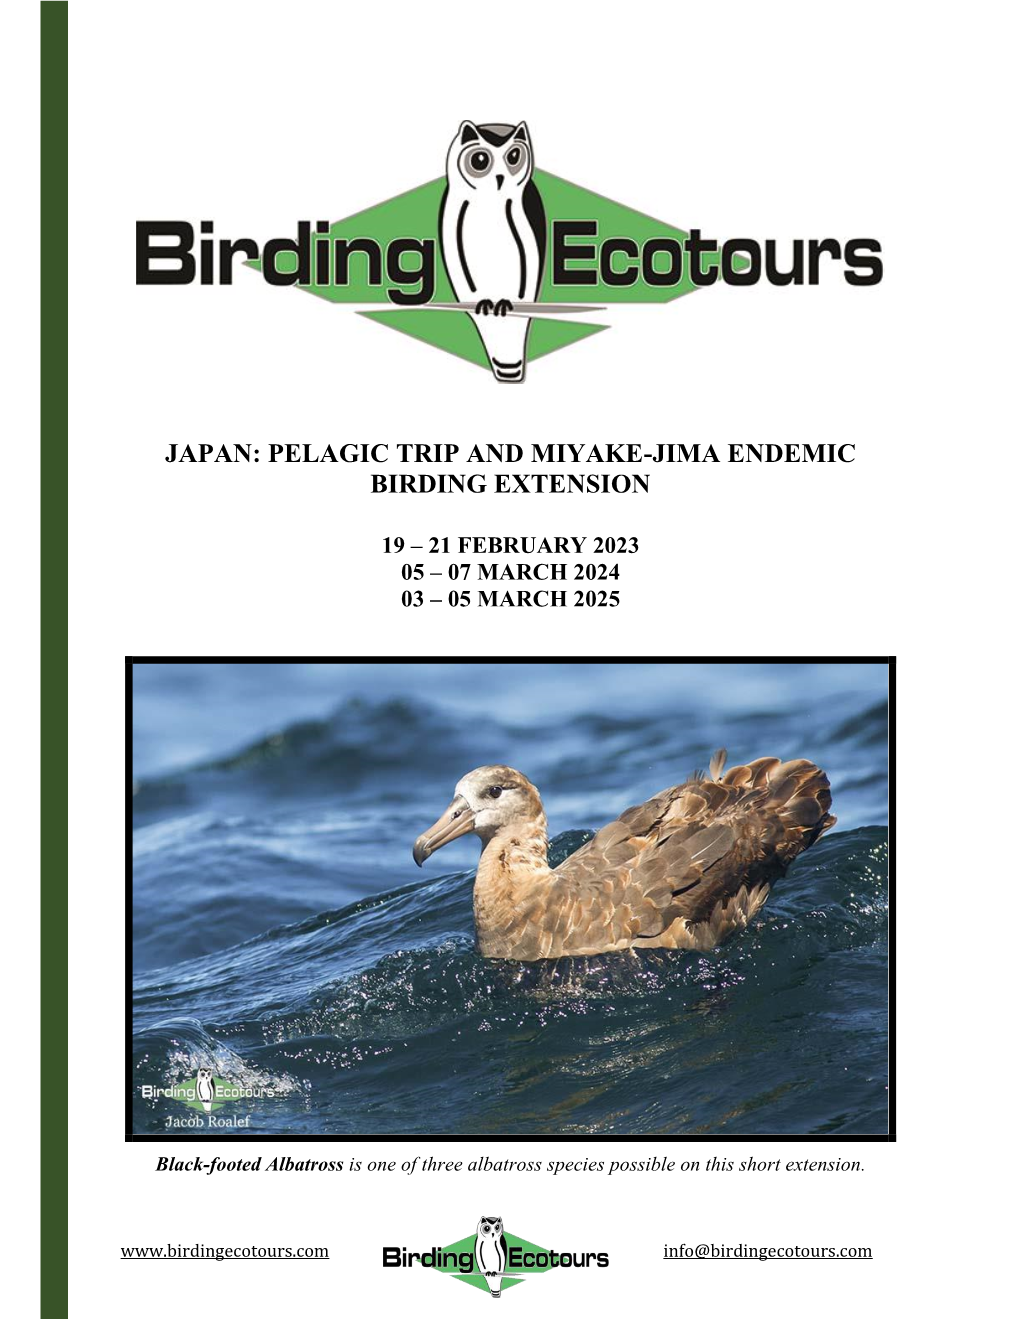 Japan: Pelagic Trip and Miyake-Jima Endemic Birding Extension